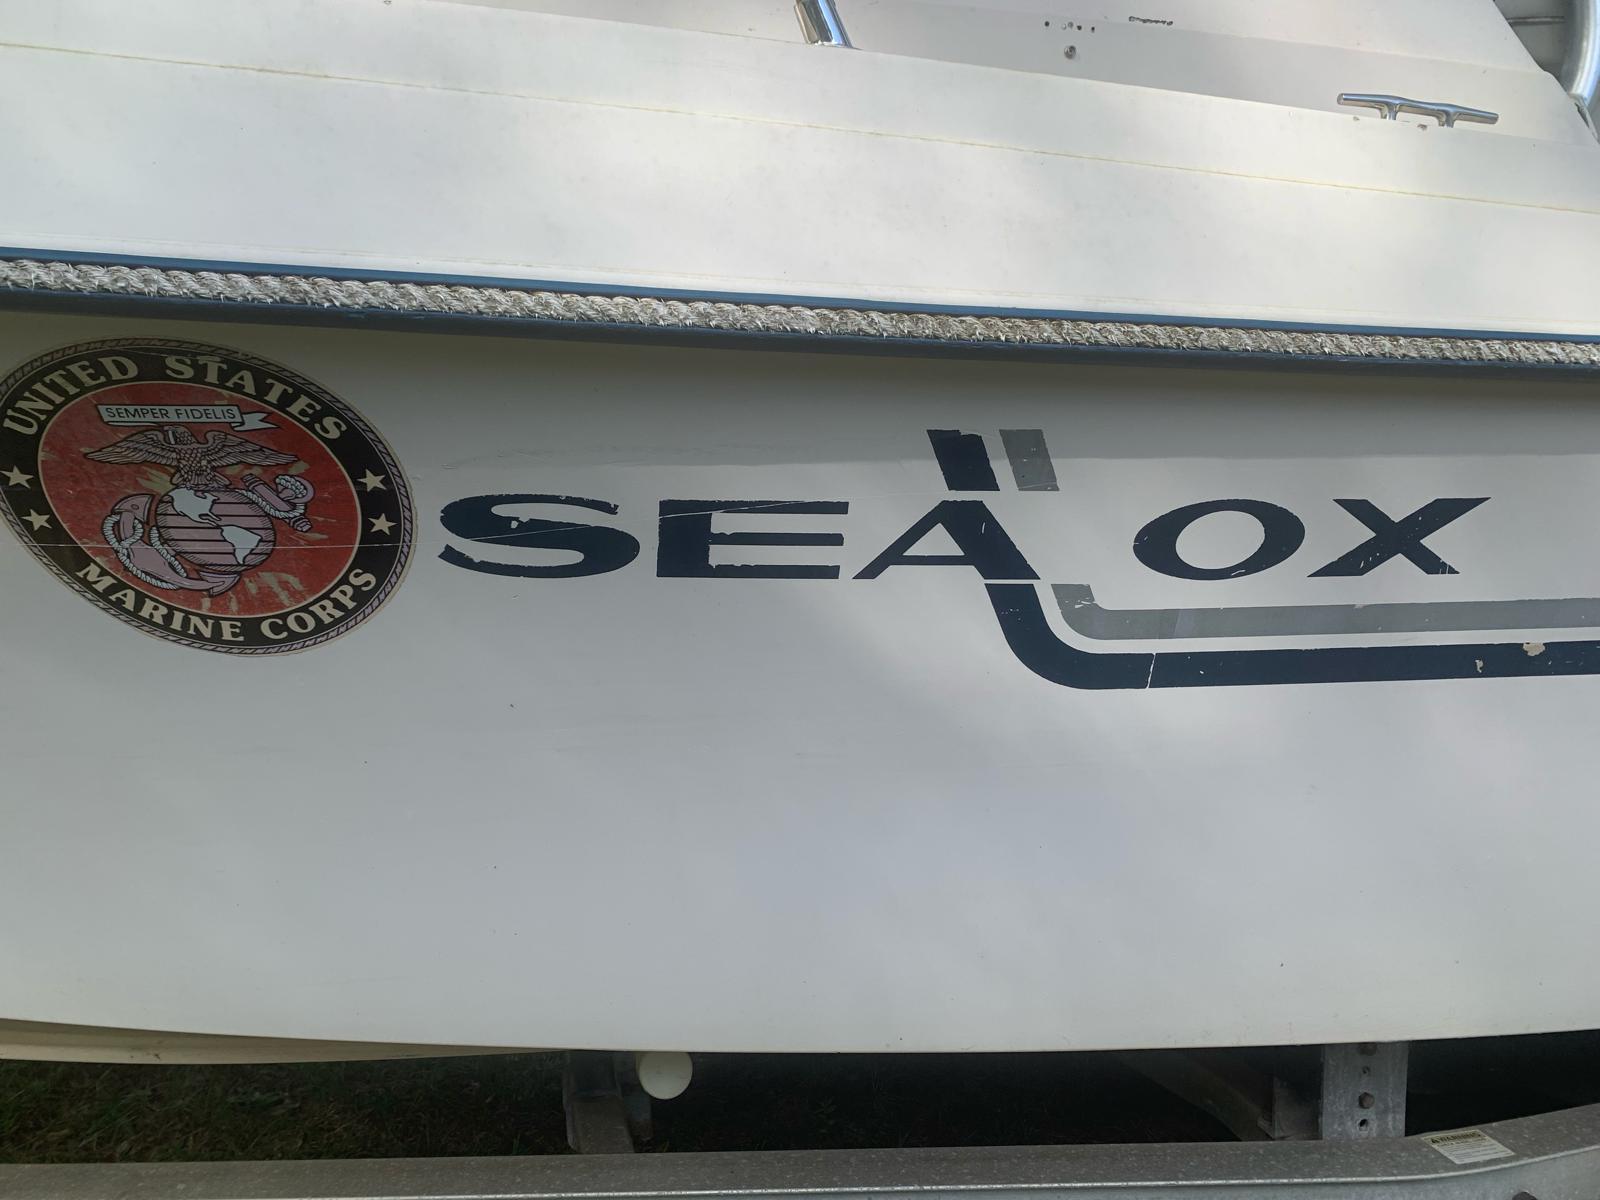 1987 Sea Ox 23” center console and berth